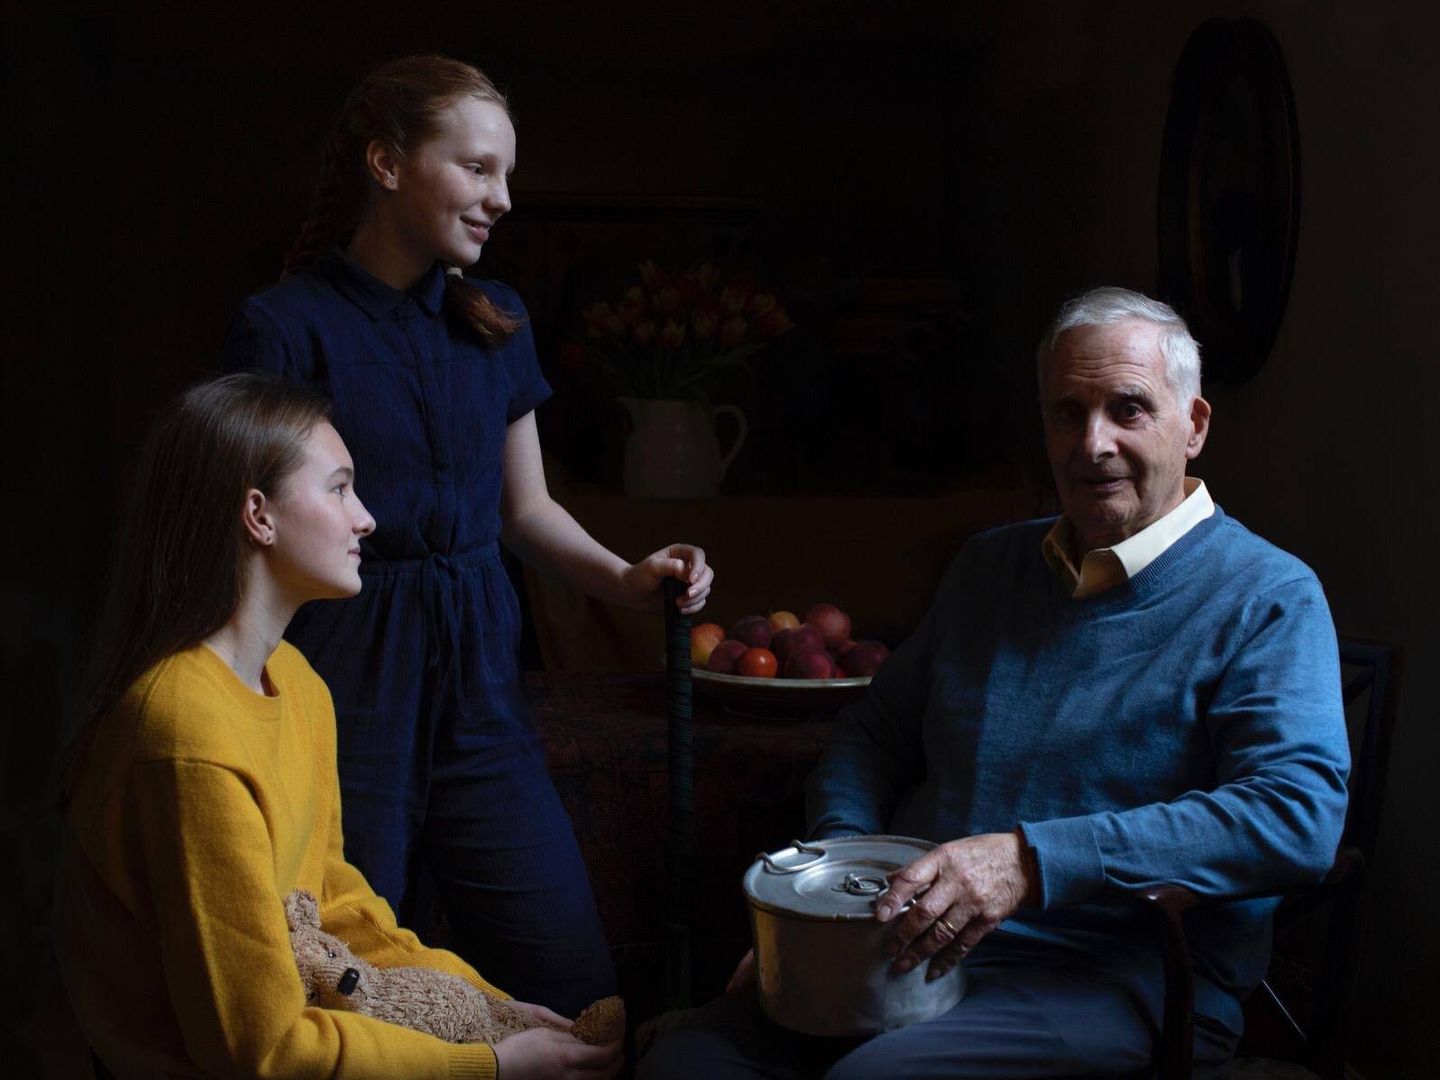 Fotografía realizada por Kate Middleton. Steven Frank, superviviente del Holocausto, y dos de sus nietas. (Kensington Palace)